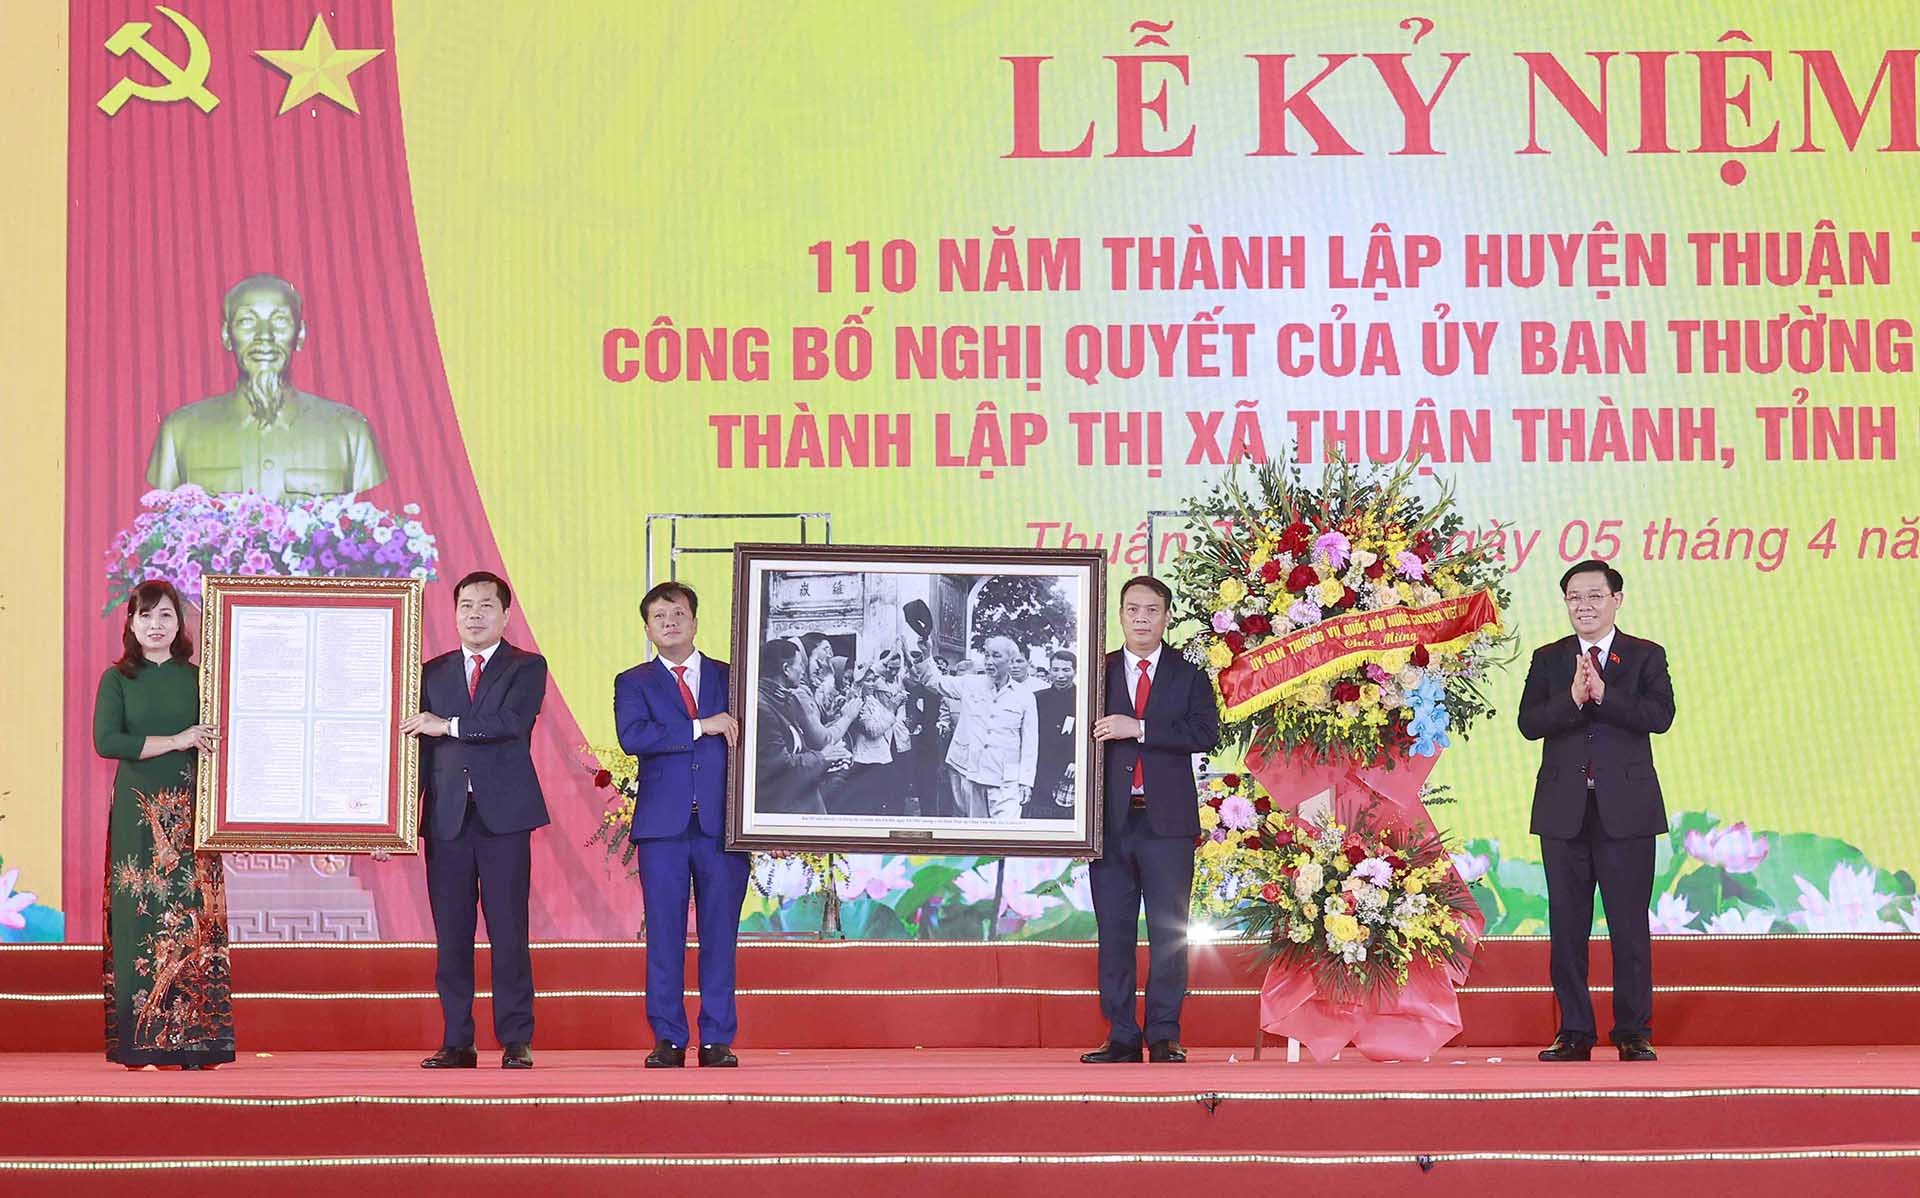 Chủ tịch Quốc hội Vương Đình Huệ trao tặng ảnh Bác Hồ và Nghị quyết của Ủy ban Thường vụ Quốc hội cho đảng bộ, chính quyền Thuận Thành. (Nguồn: Quốc hội)